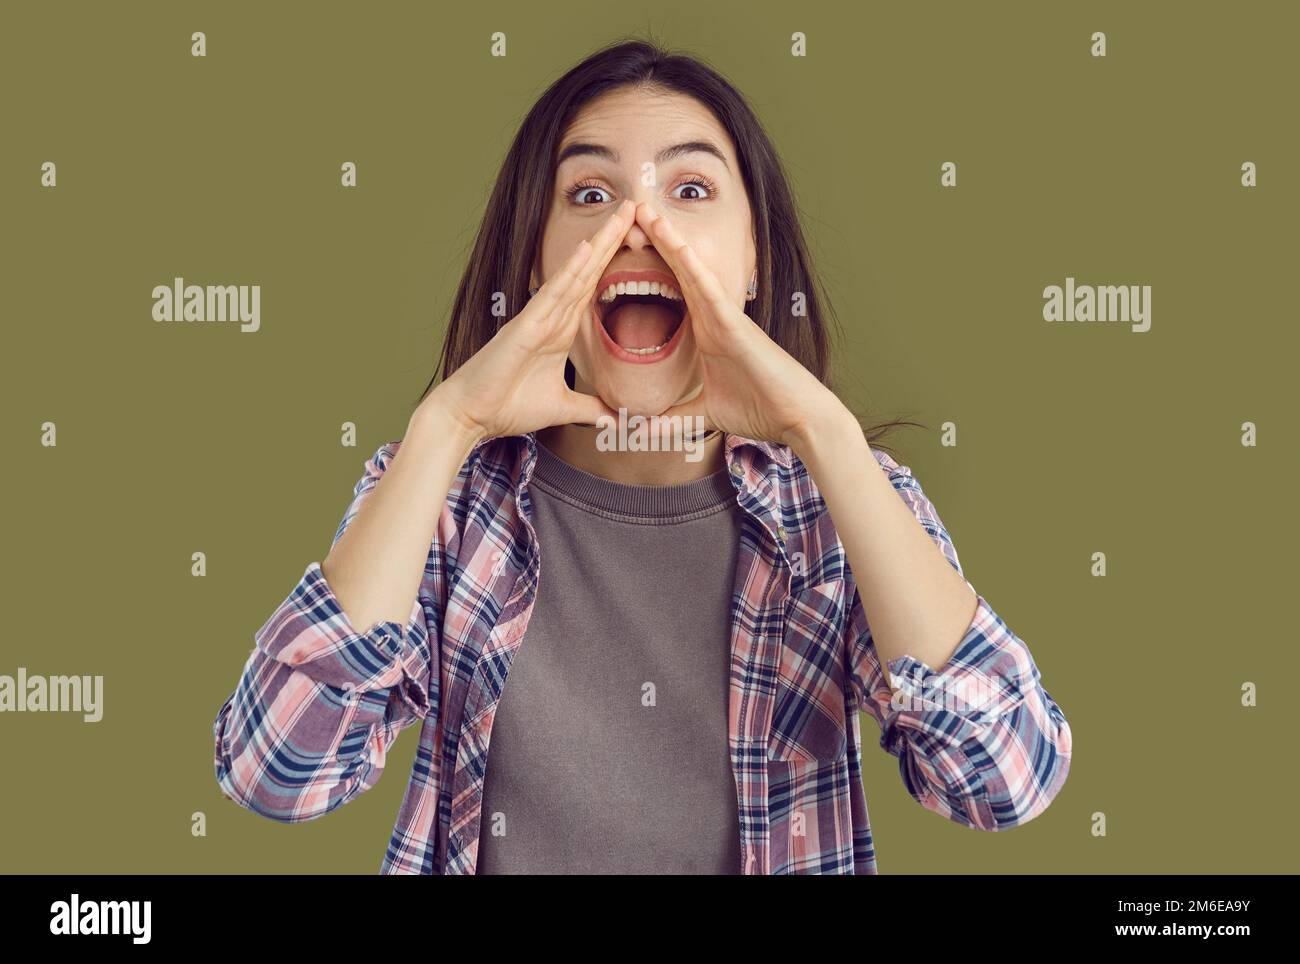 Eine aufgeregte junge brünette Frau in einem karierten Hemd mit den Händen am Mund auf Khaki-Hintergrund. Stockfoto